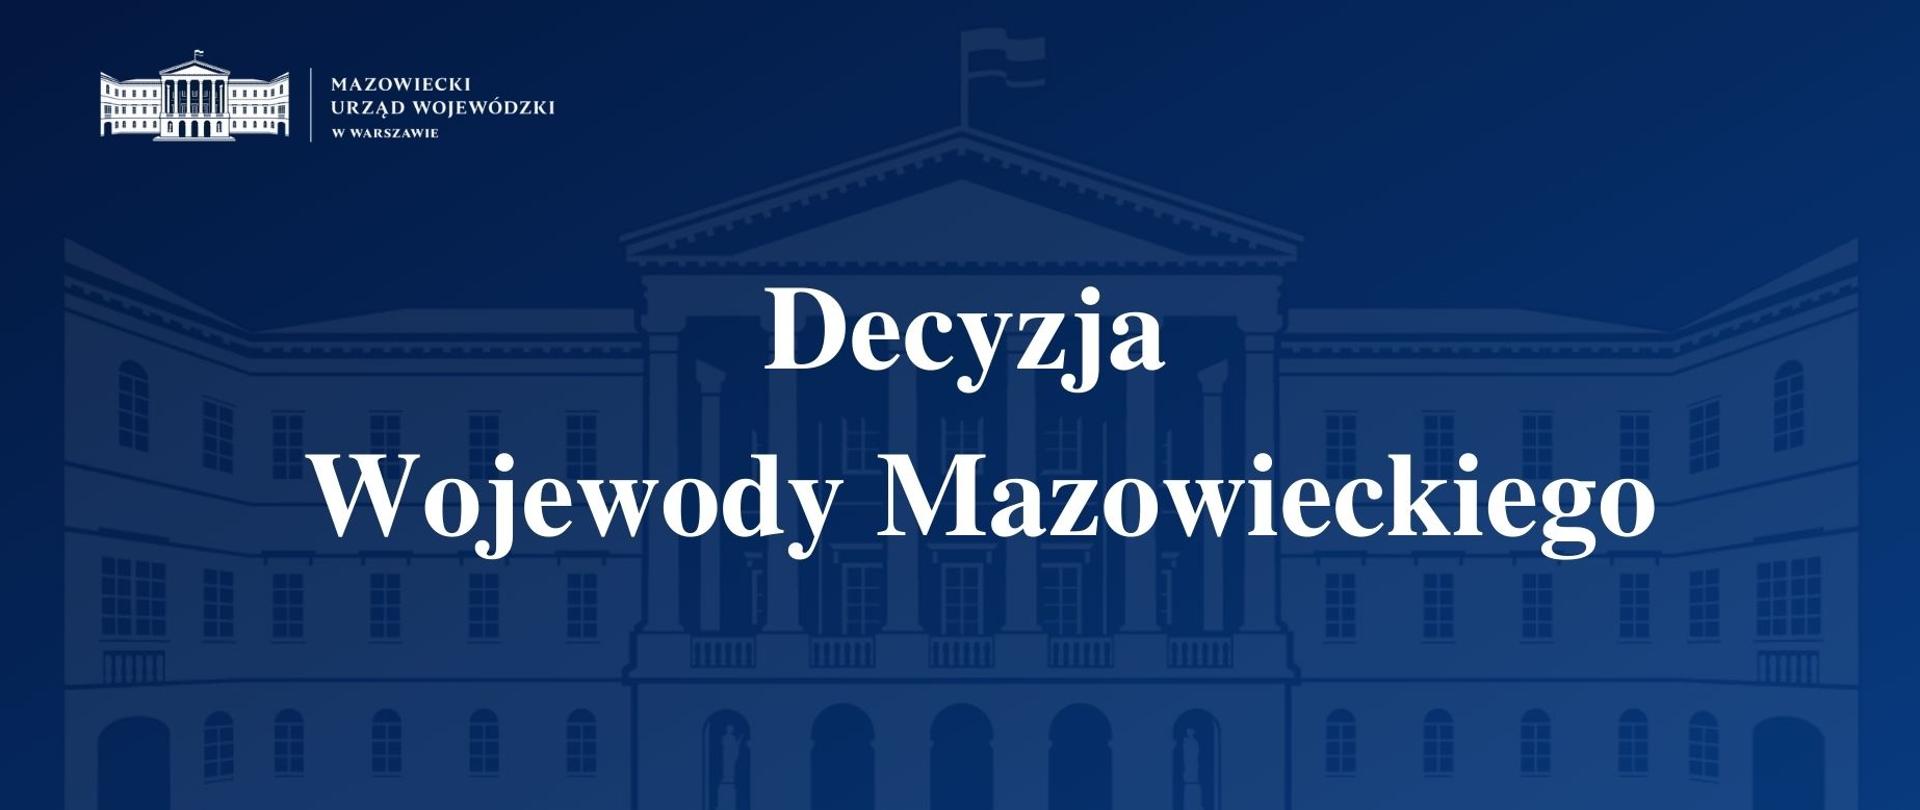 Grafika przedstawia granatową planszę z logo Mazowieckiego Urzędu Wojewódzkiego w Warszawie i napisem "Decyzja Wojewody Mazowieckiego".